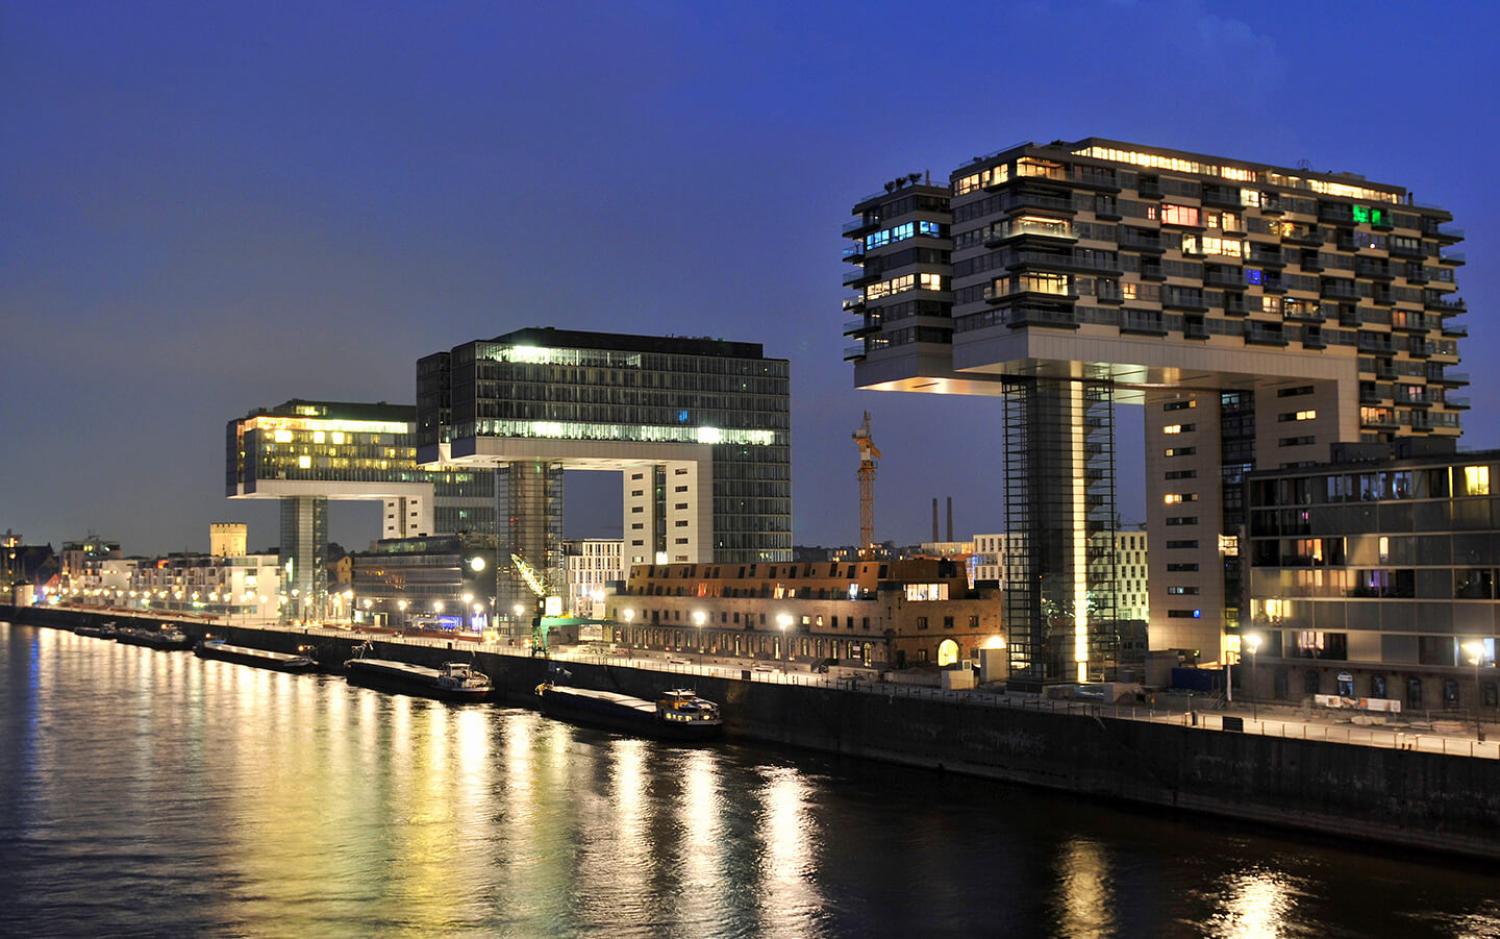 Kranhäuser am südlichen Pier im Rheinau-Hafen Köln, wo CSMM neue Büroflächen für frontier economics konzipiert hat